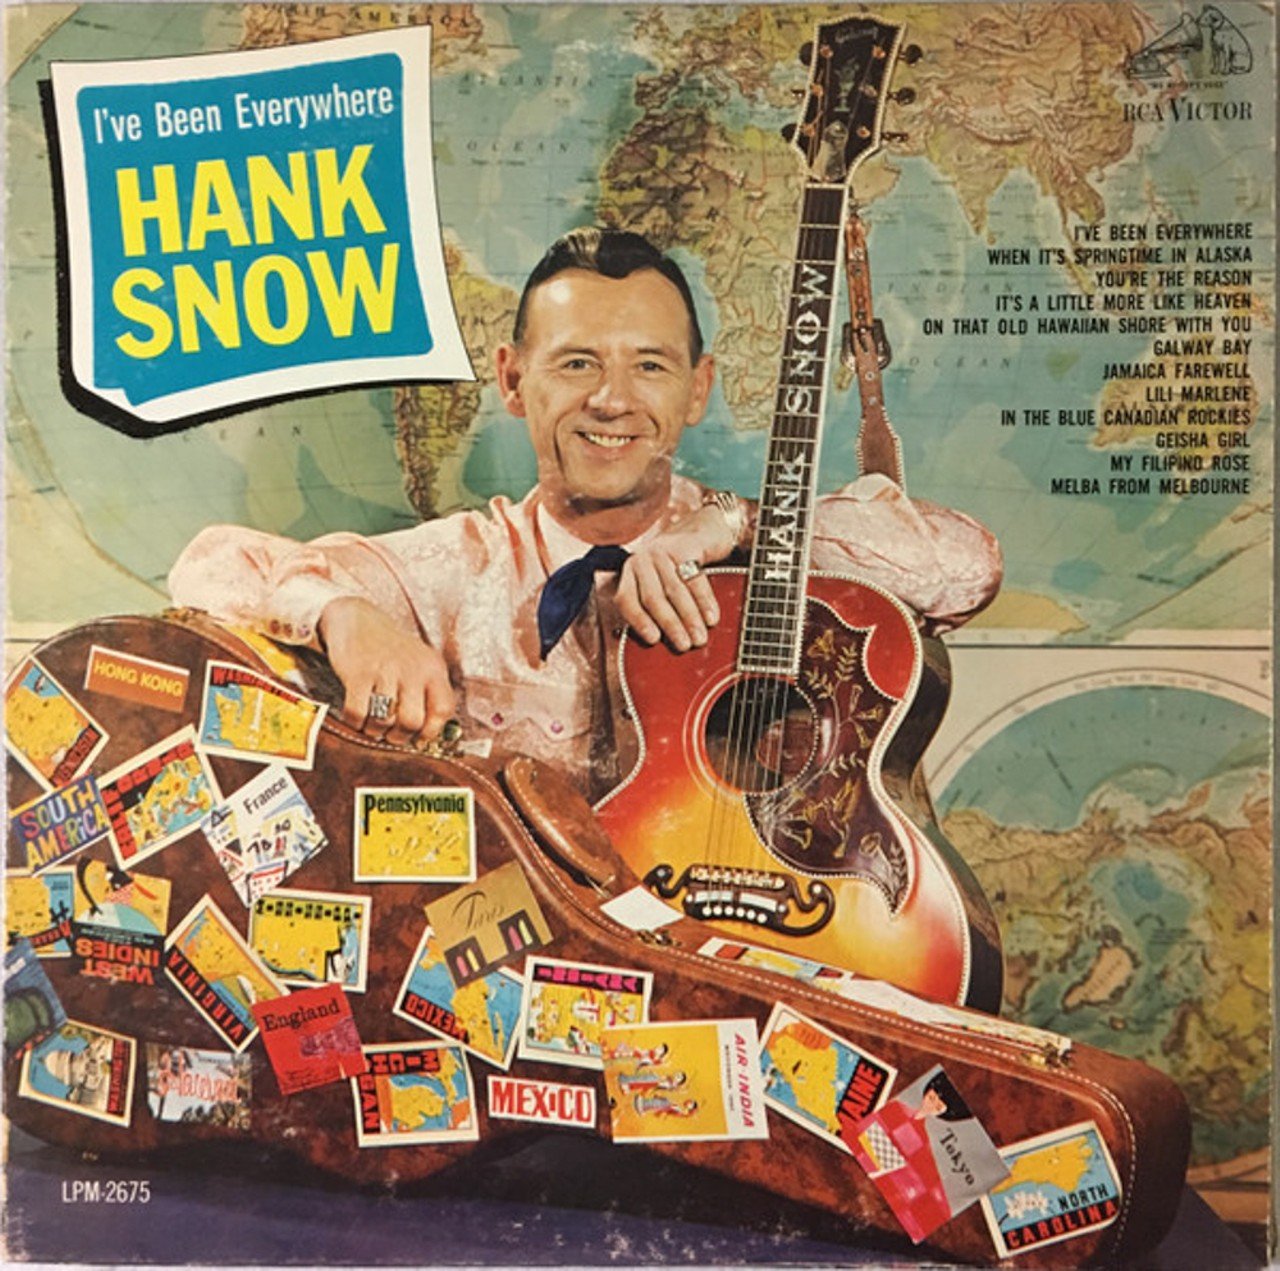  Hank Snow &#151; &#147;I've Been Everywhere&#148; 
&#147;Louisville, Nashville, Knoxville, Ombabika, 
Schefferville, Jacksonville, Waterville, Costa Rica&#148;